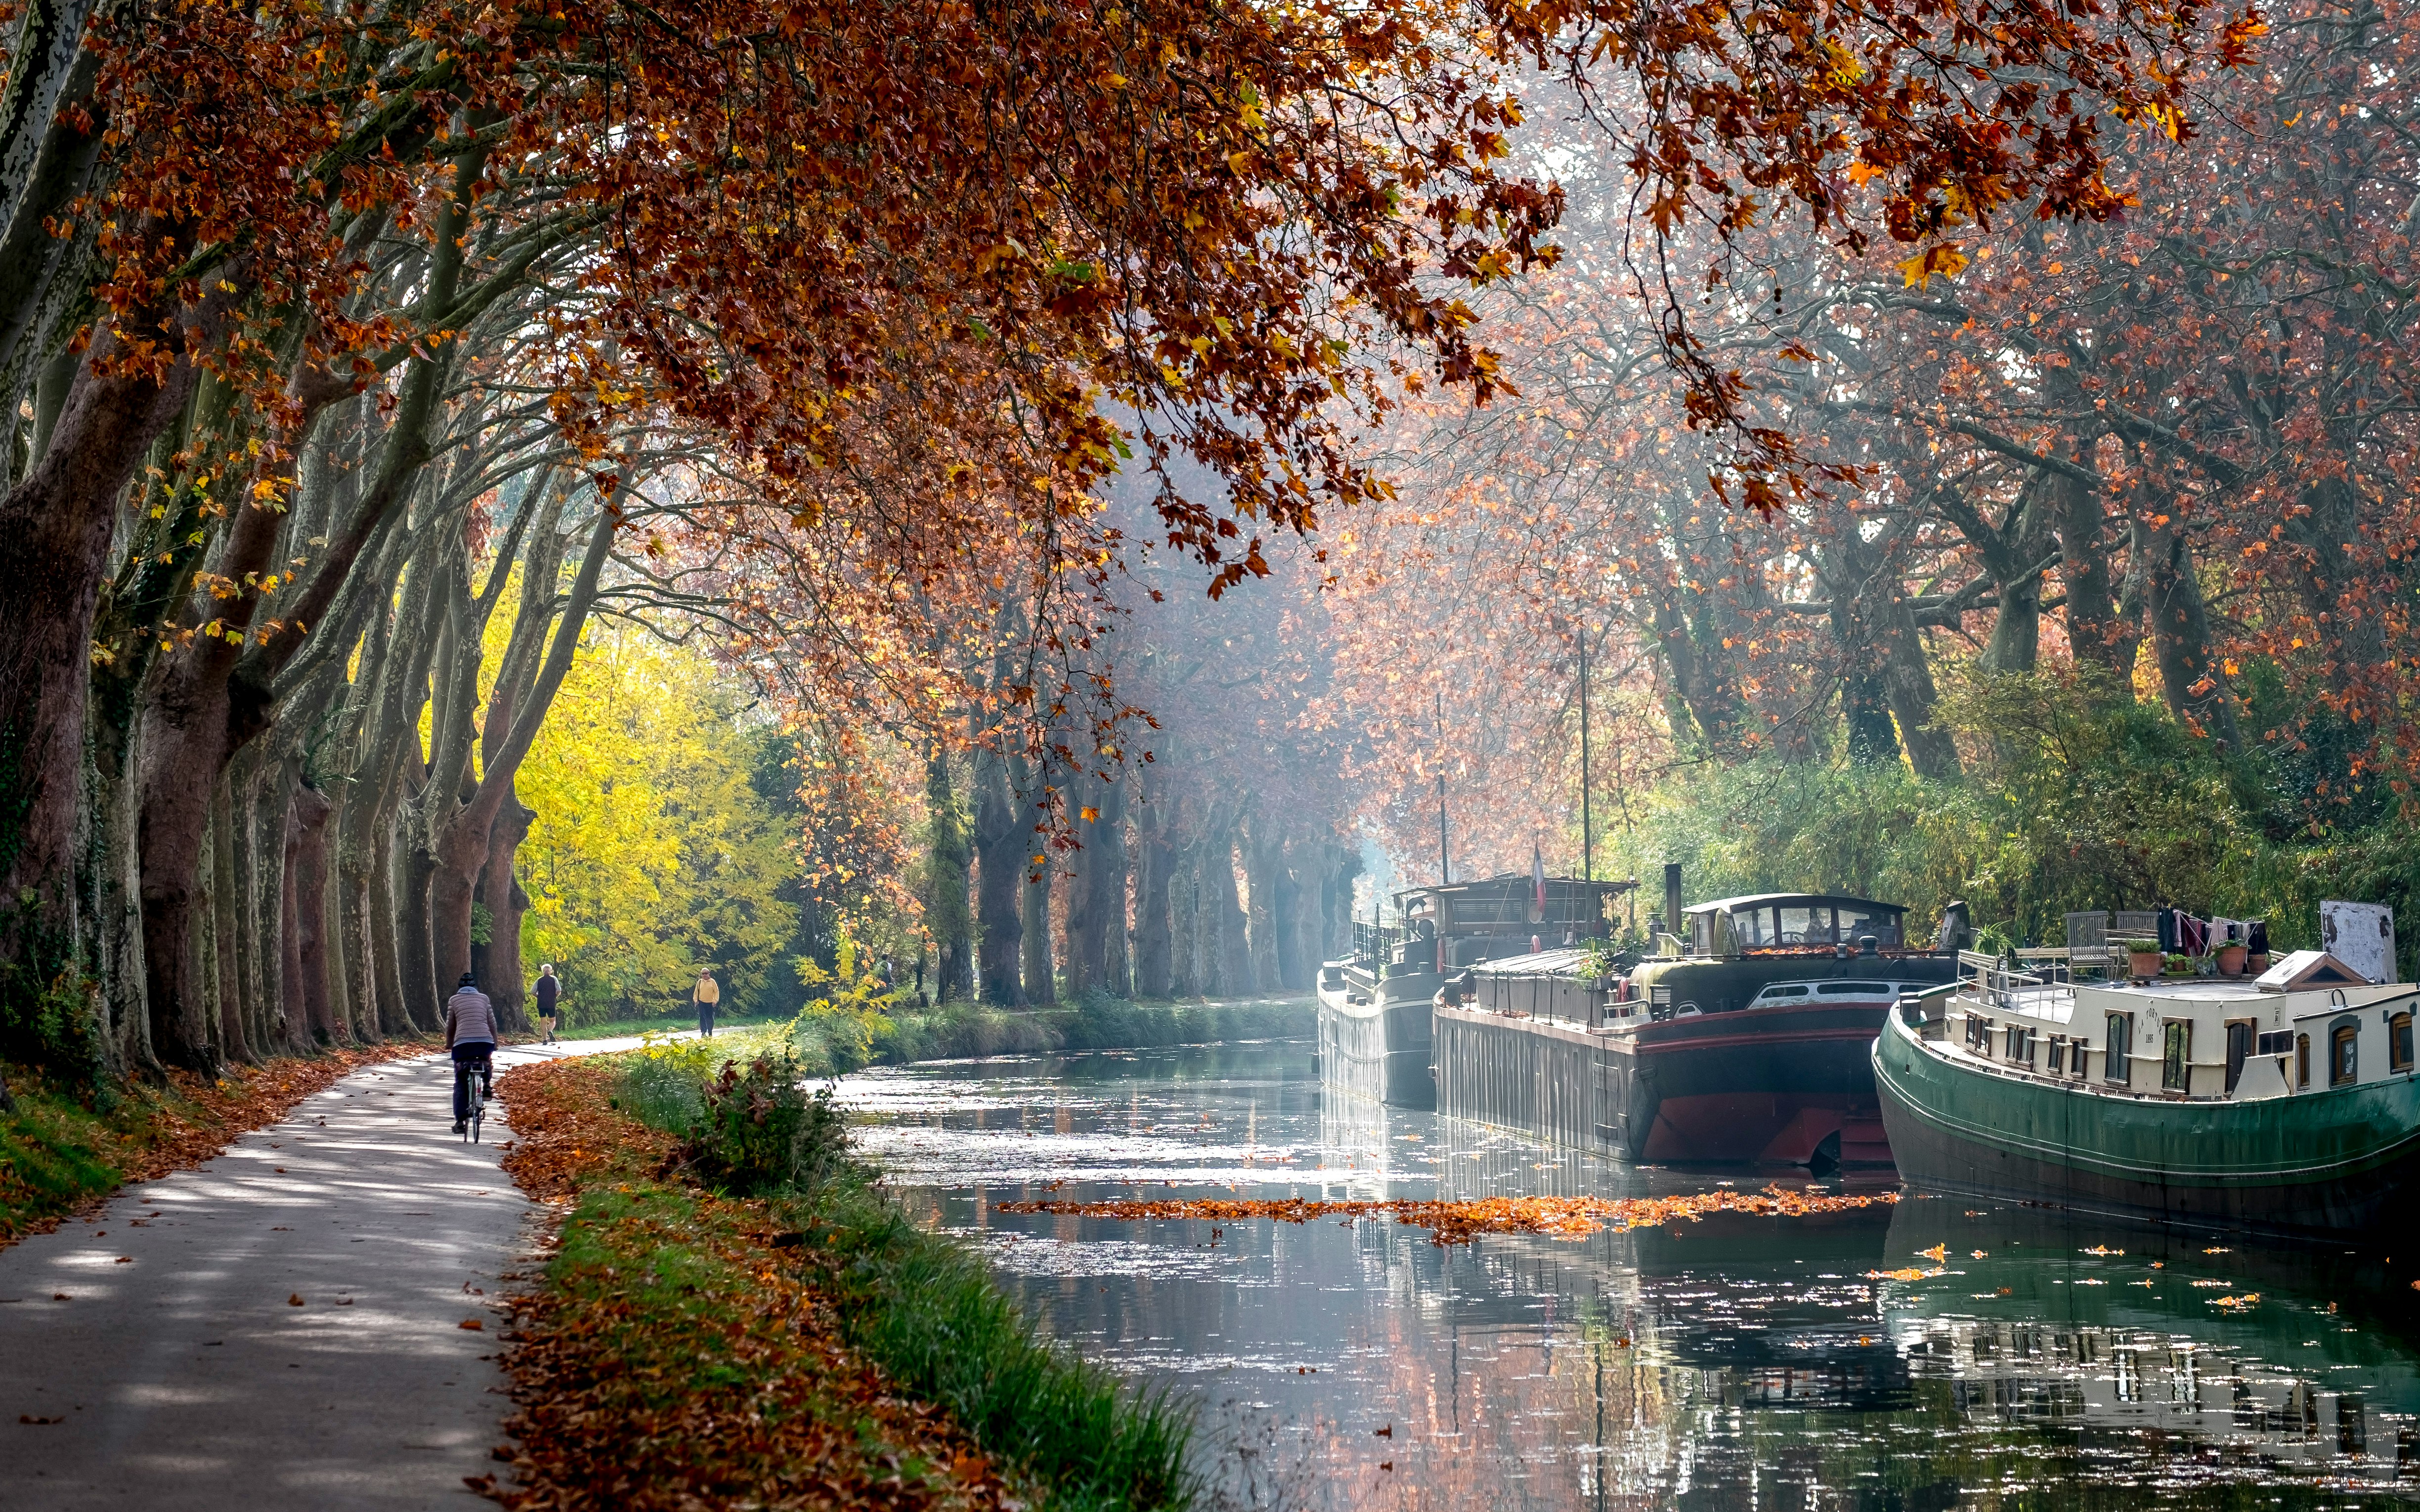 Wasserkanal mit Hausbooten im Herbst, Radweg